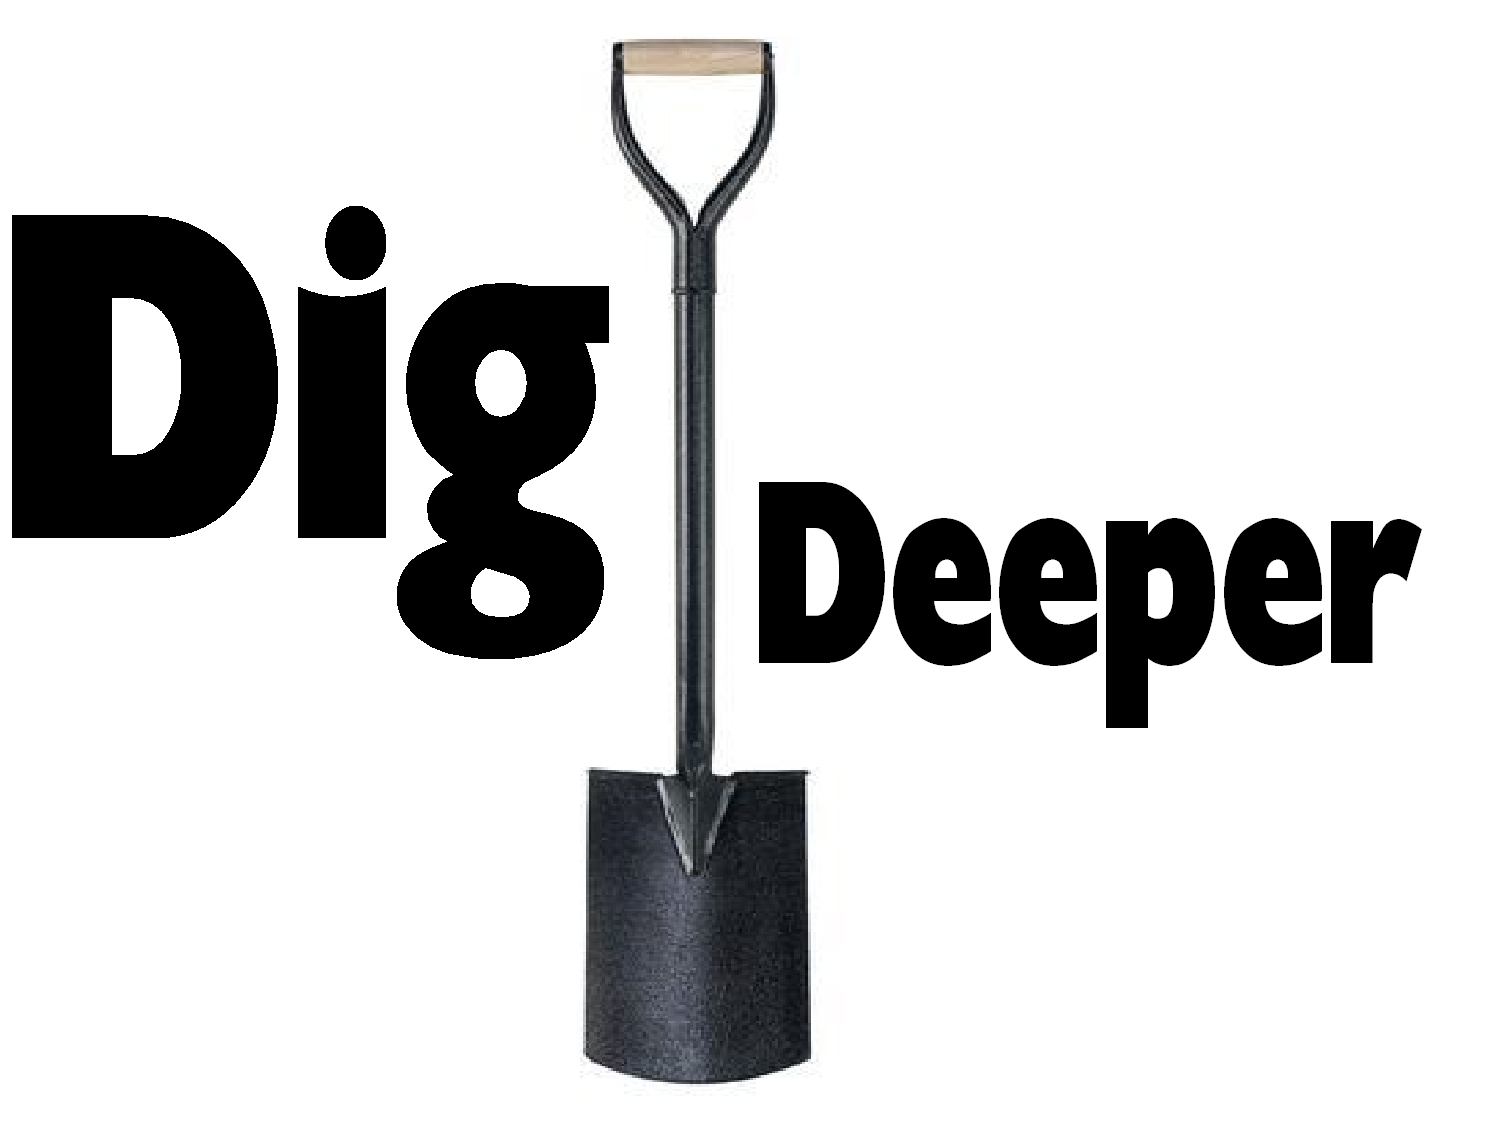 digging deeper secret world mission